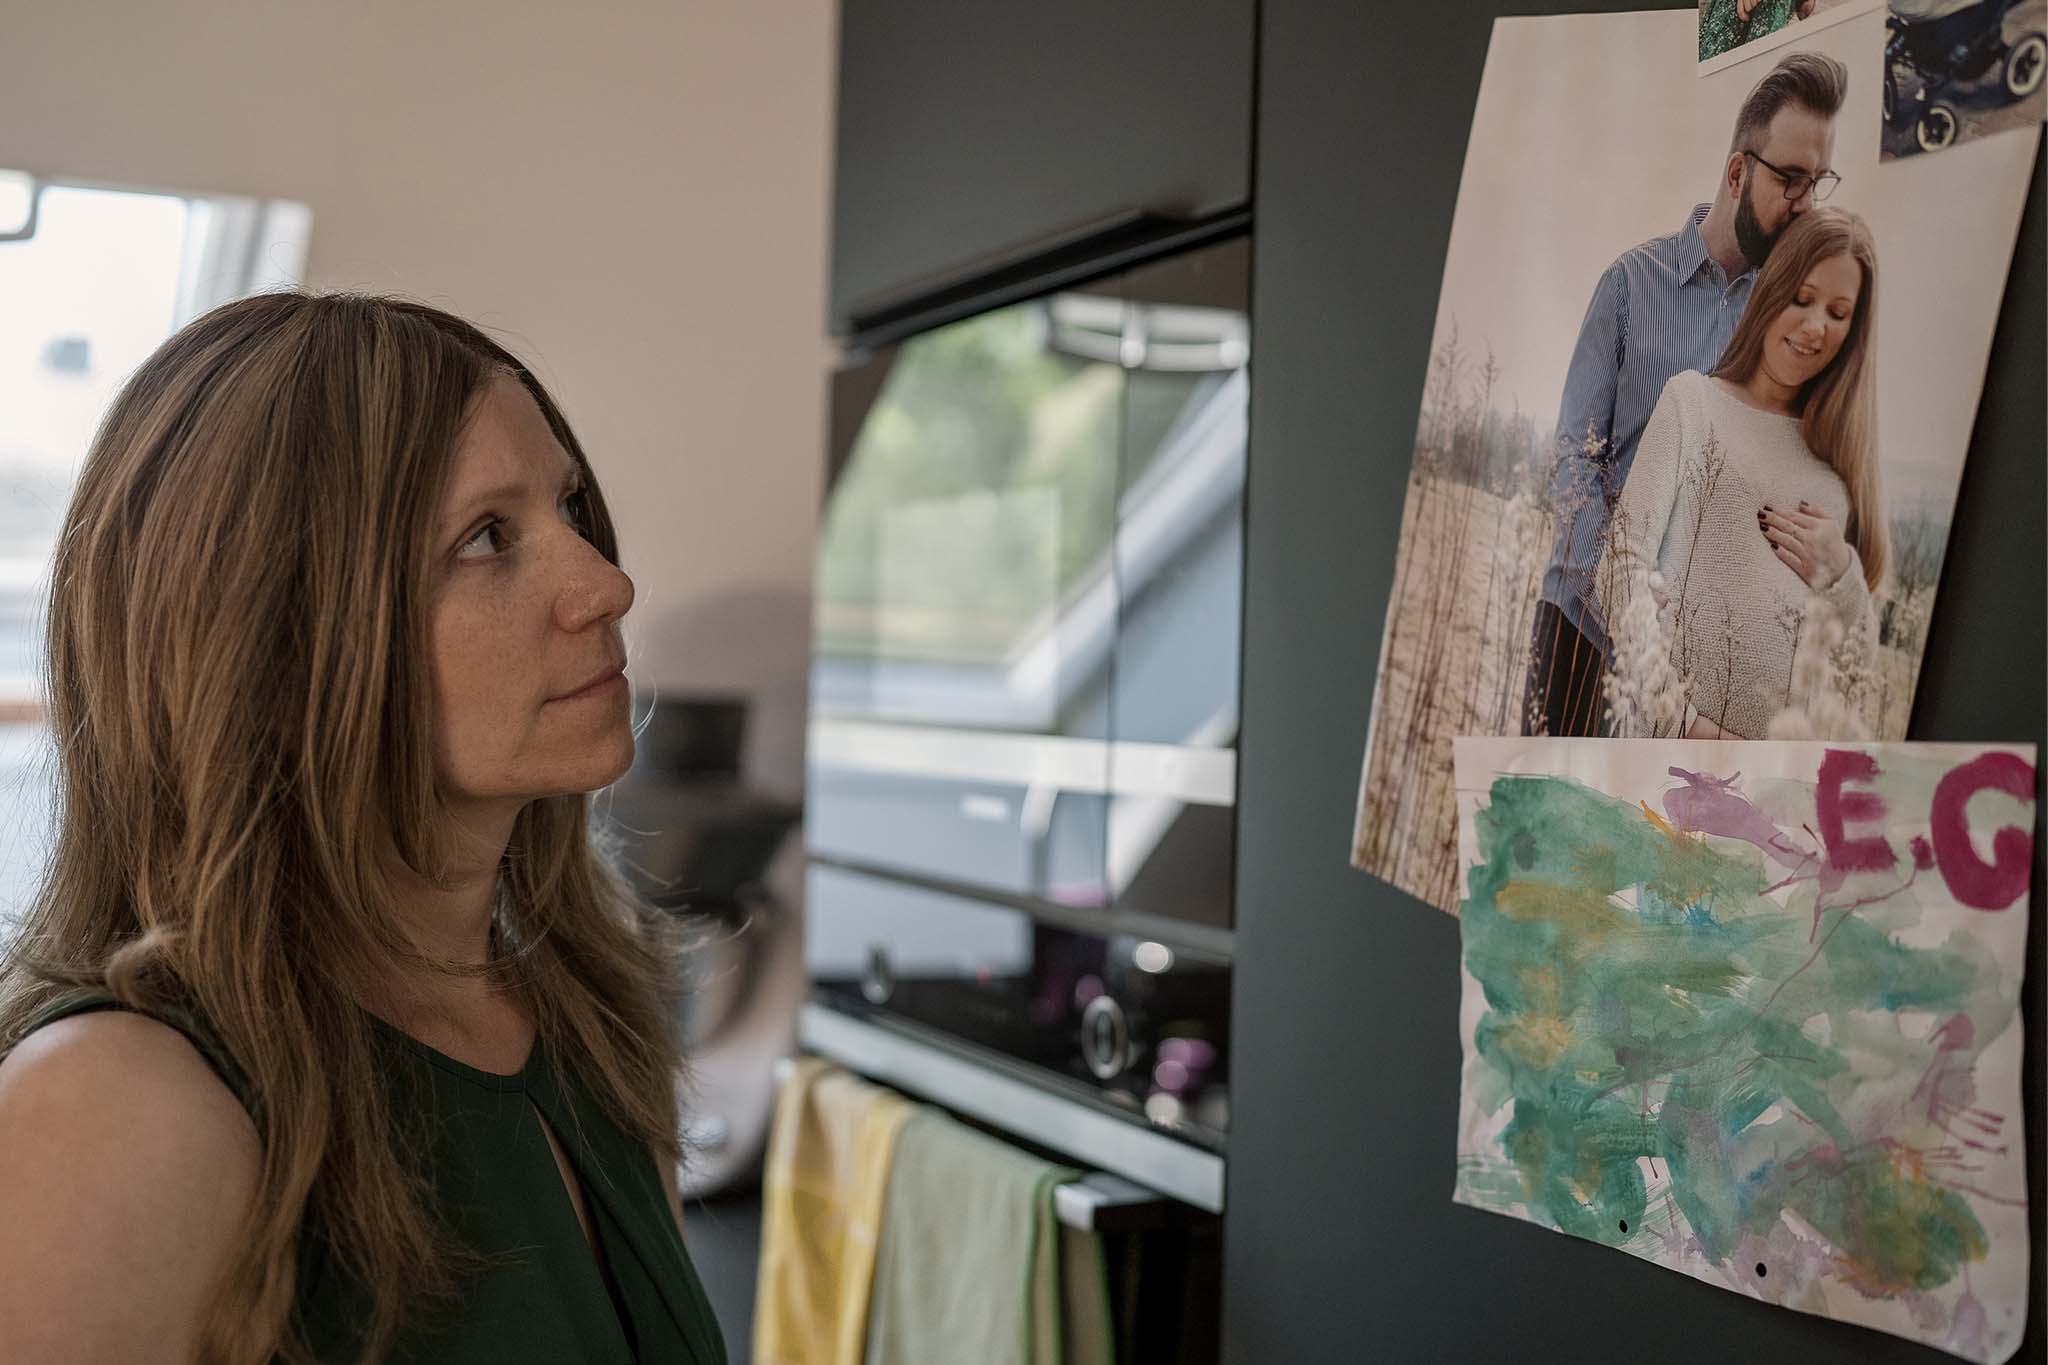 Silja steht vor ihrem Kühlschrank. Sie betrachtet ein Foto, das mit einem Magneten befestigt ist. Es zeigt sie als Schwangere gemeinsam mit ihrem Mann.